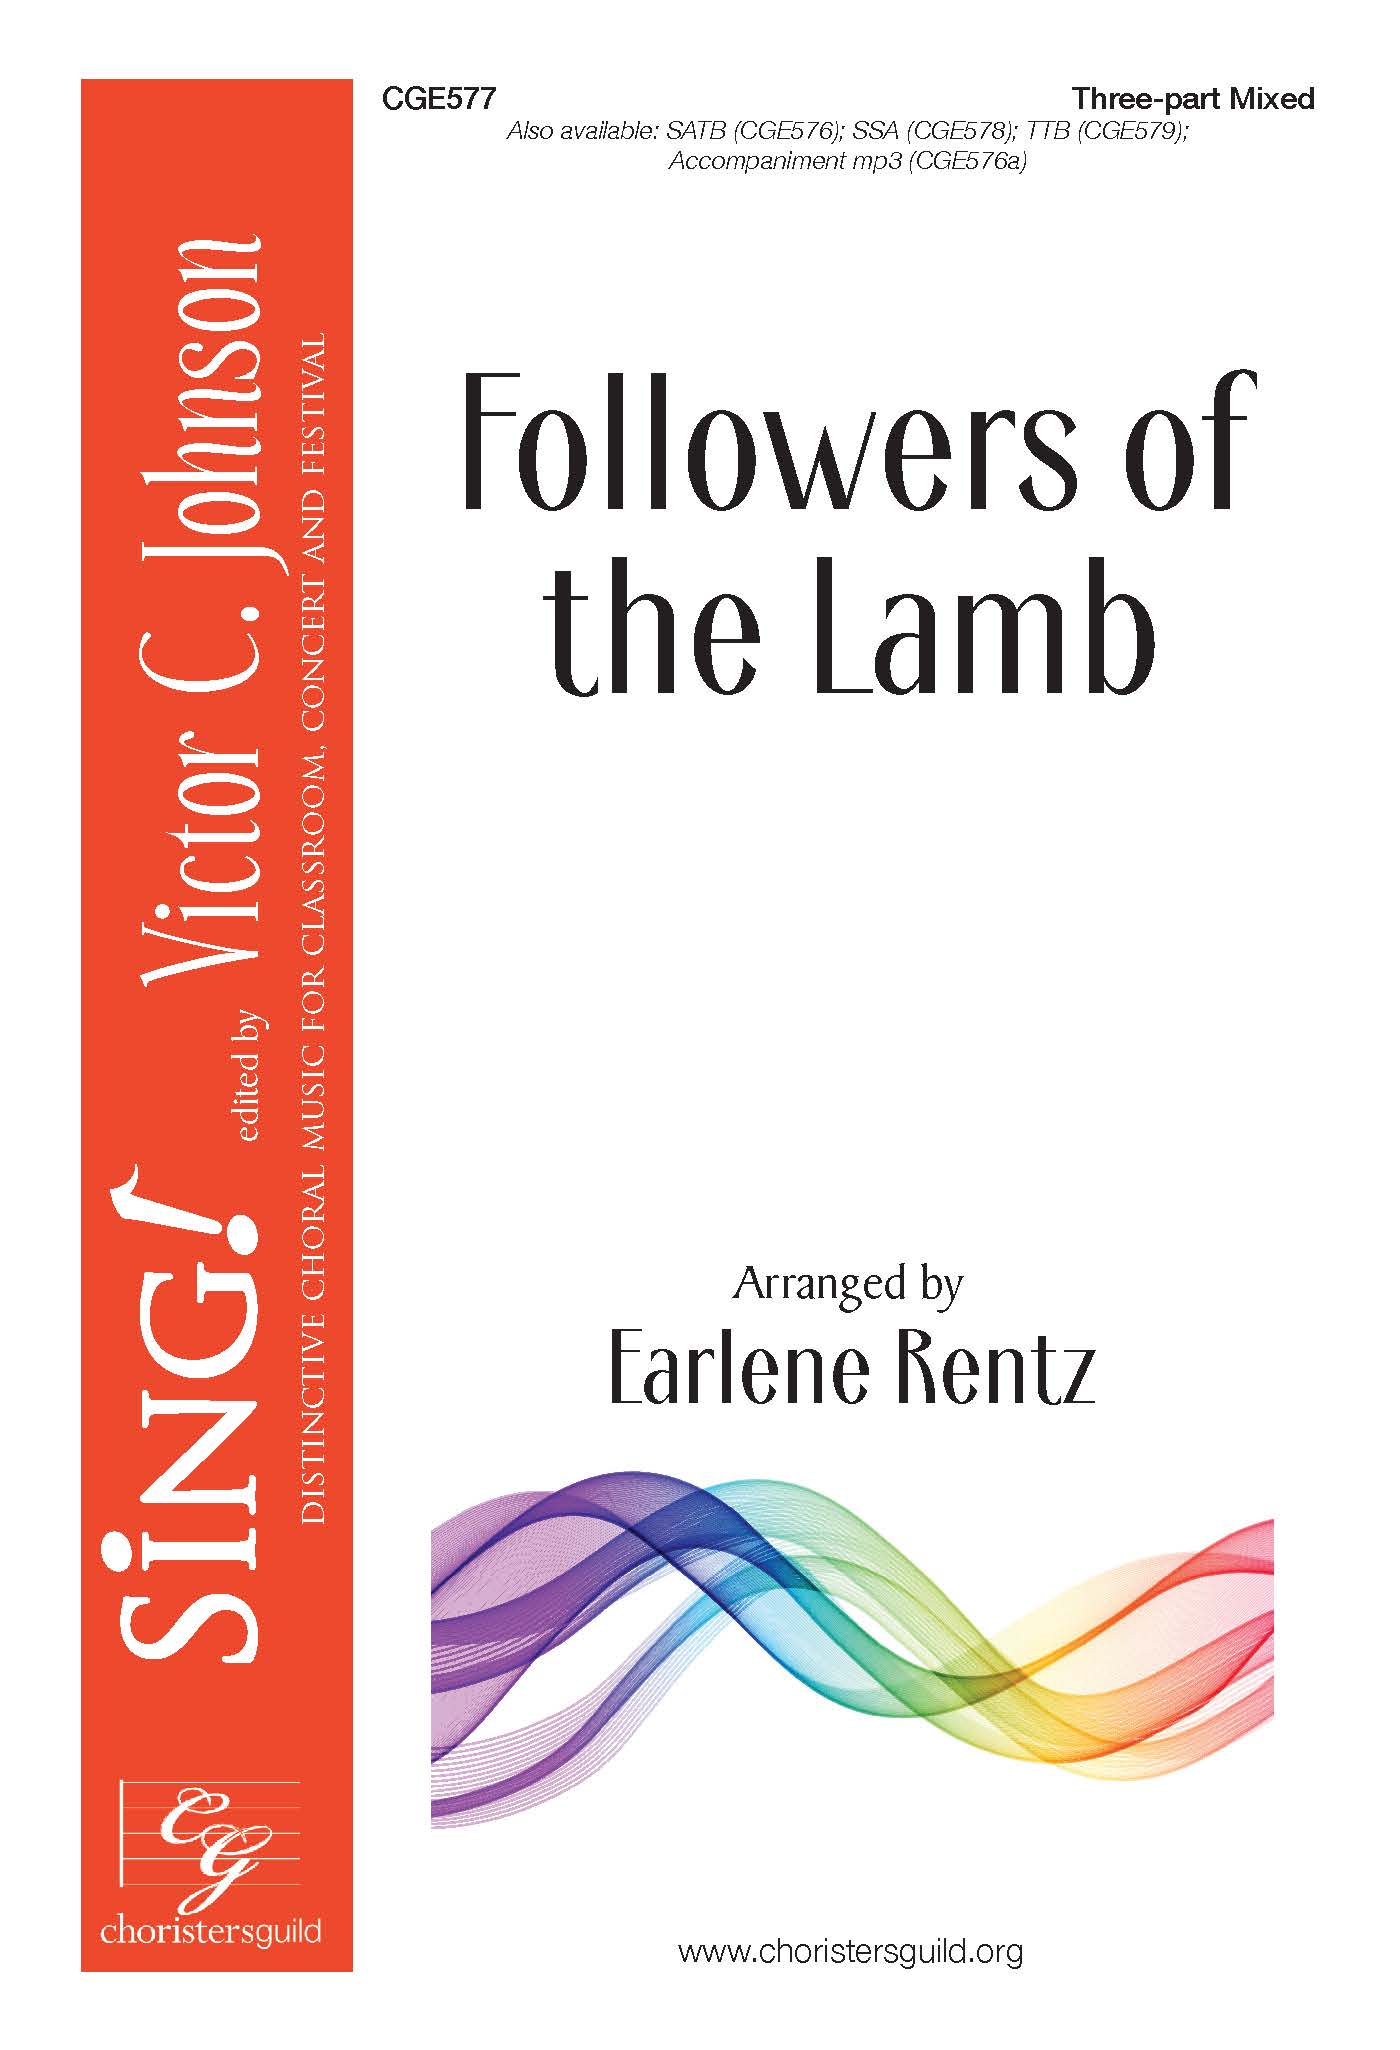 Followers of the Lamb - Three-part Mixed